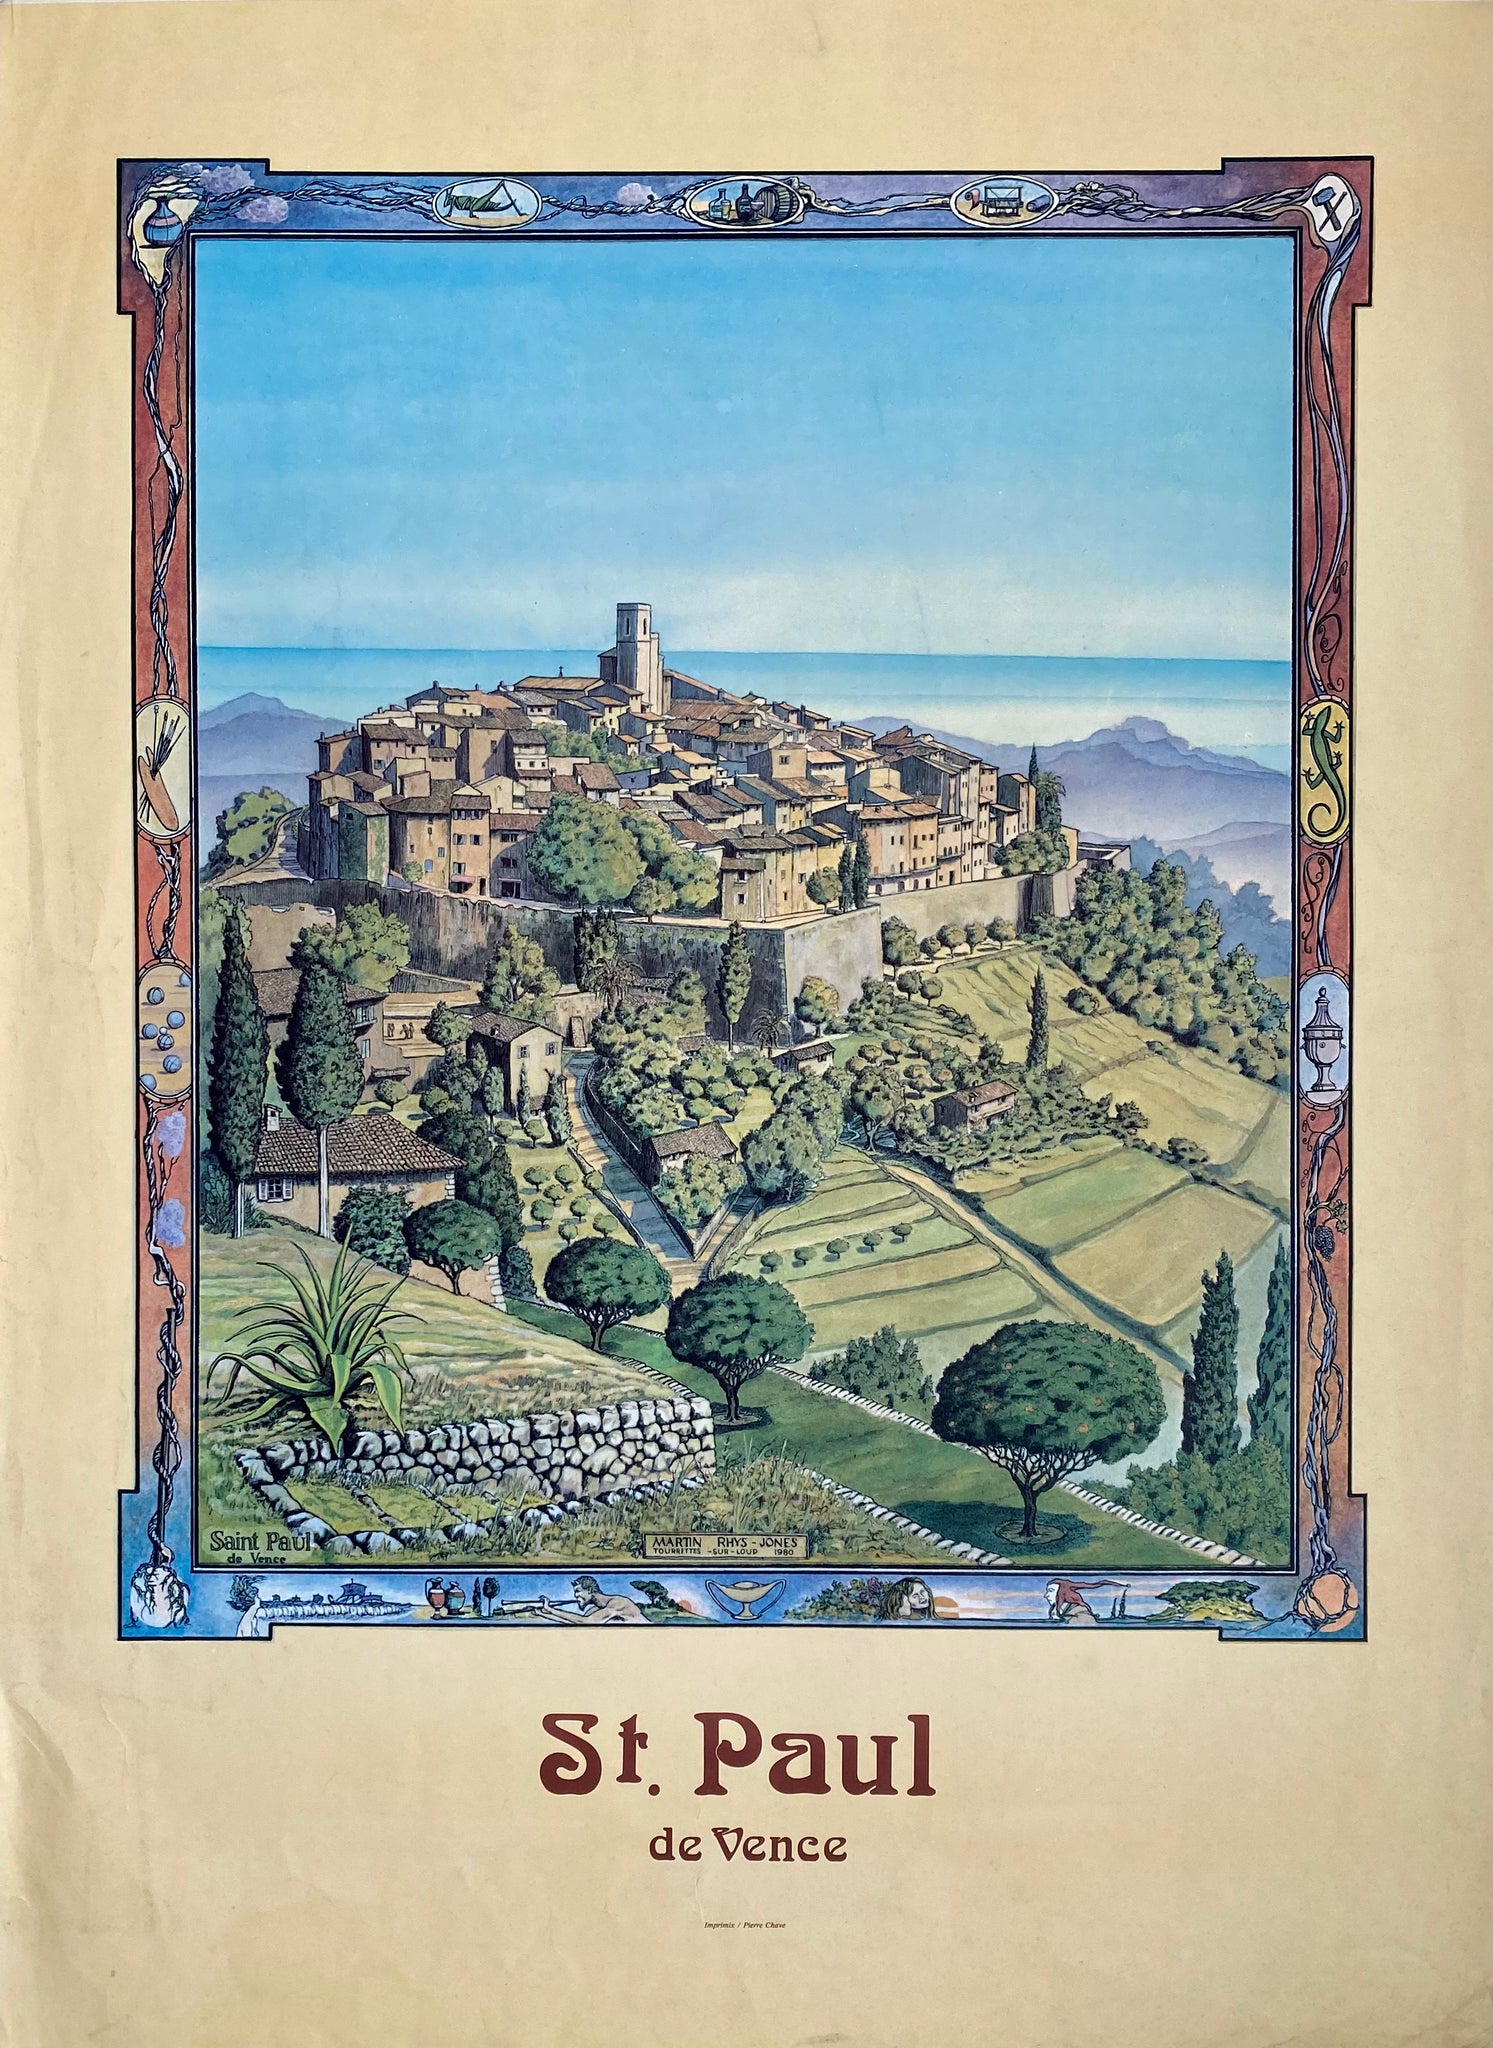 Affiche St. Paul de Vence    Par Martin Rhys - Jones, 1980